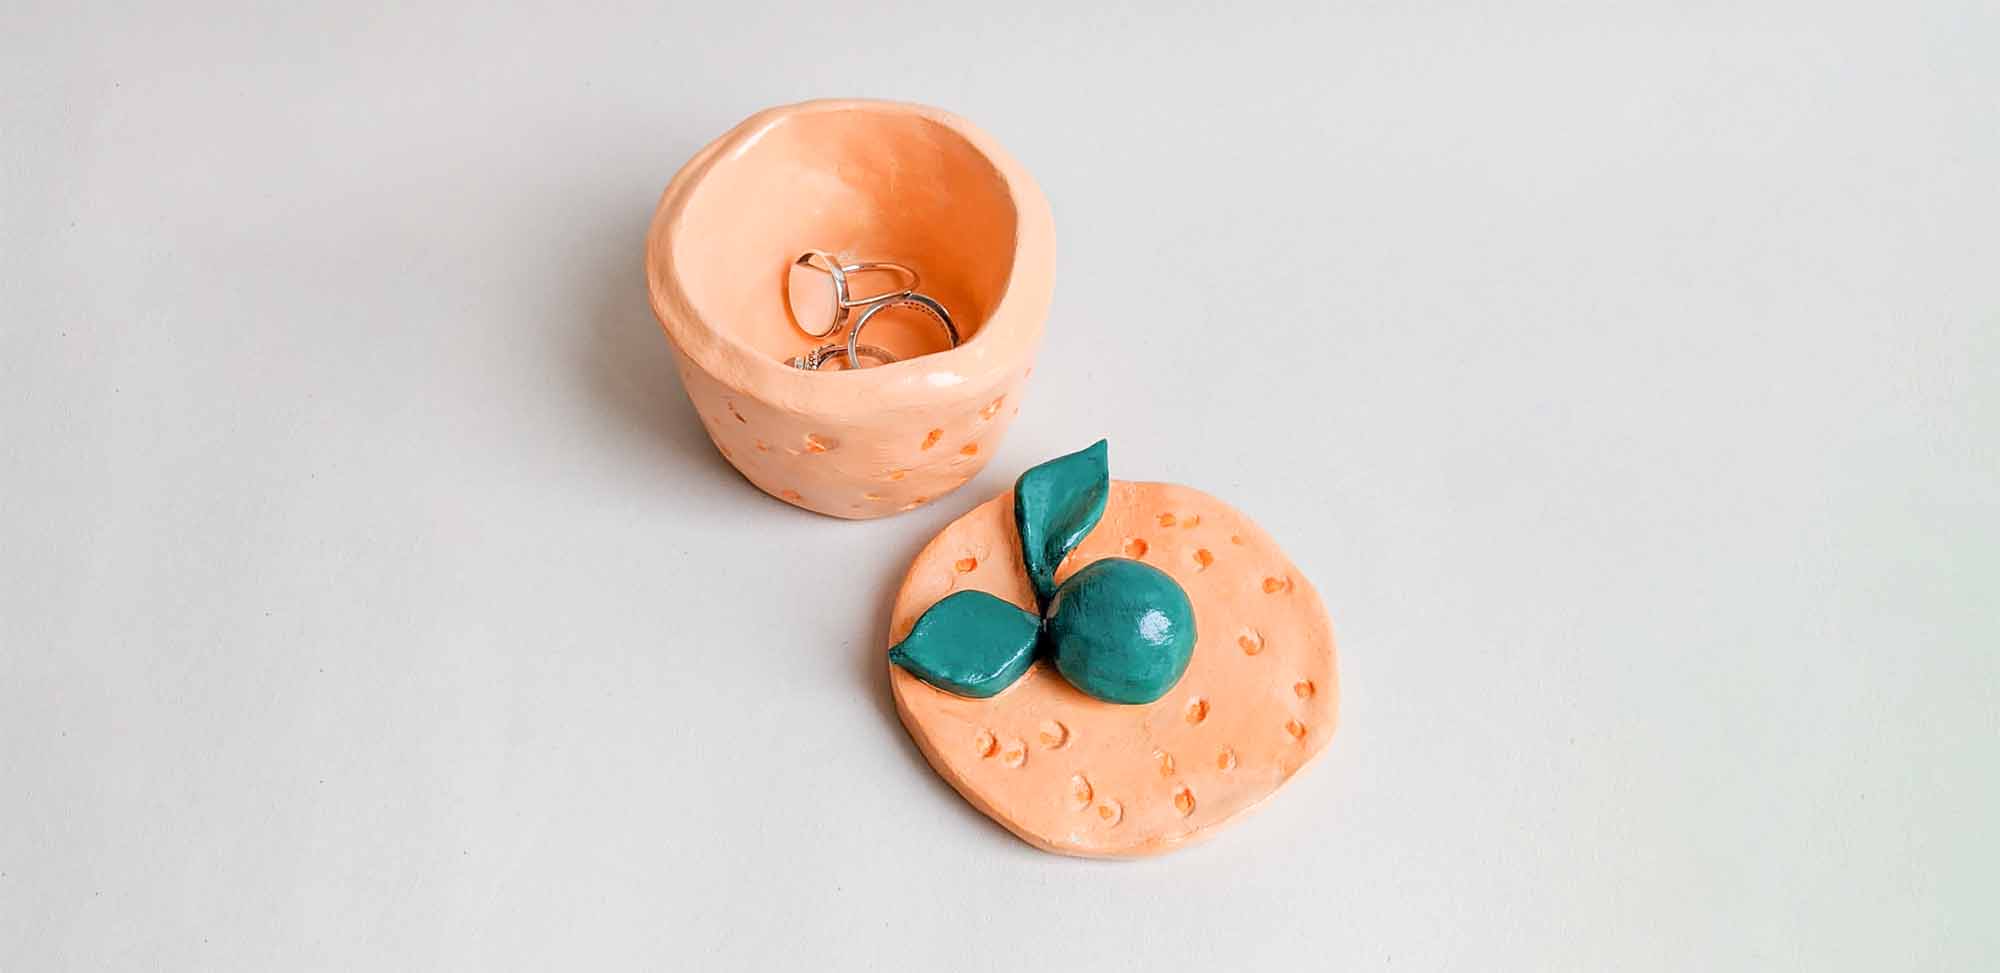 Sculpd Pottery Kit - No Paints Matte